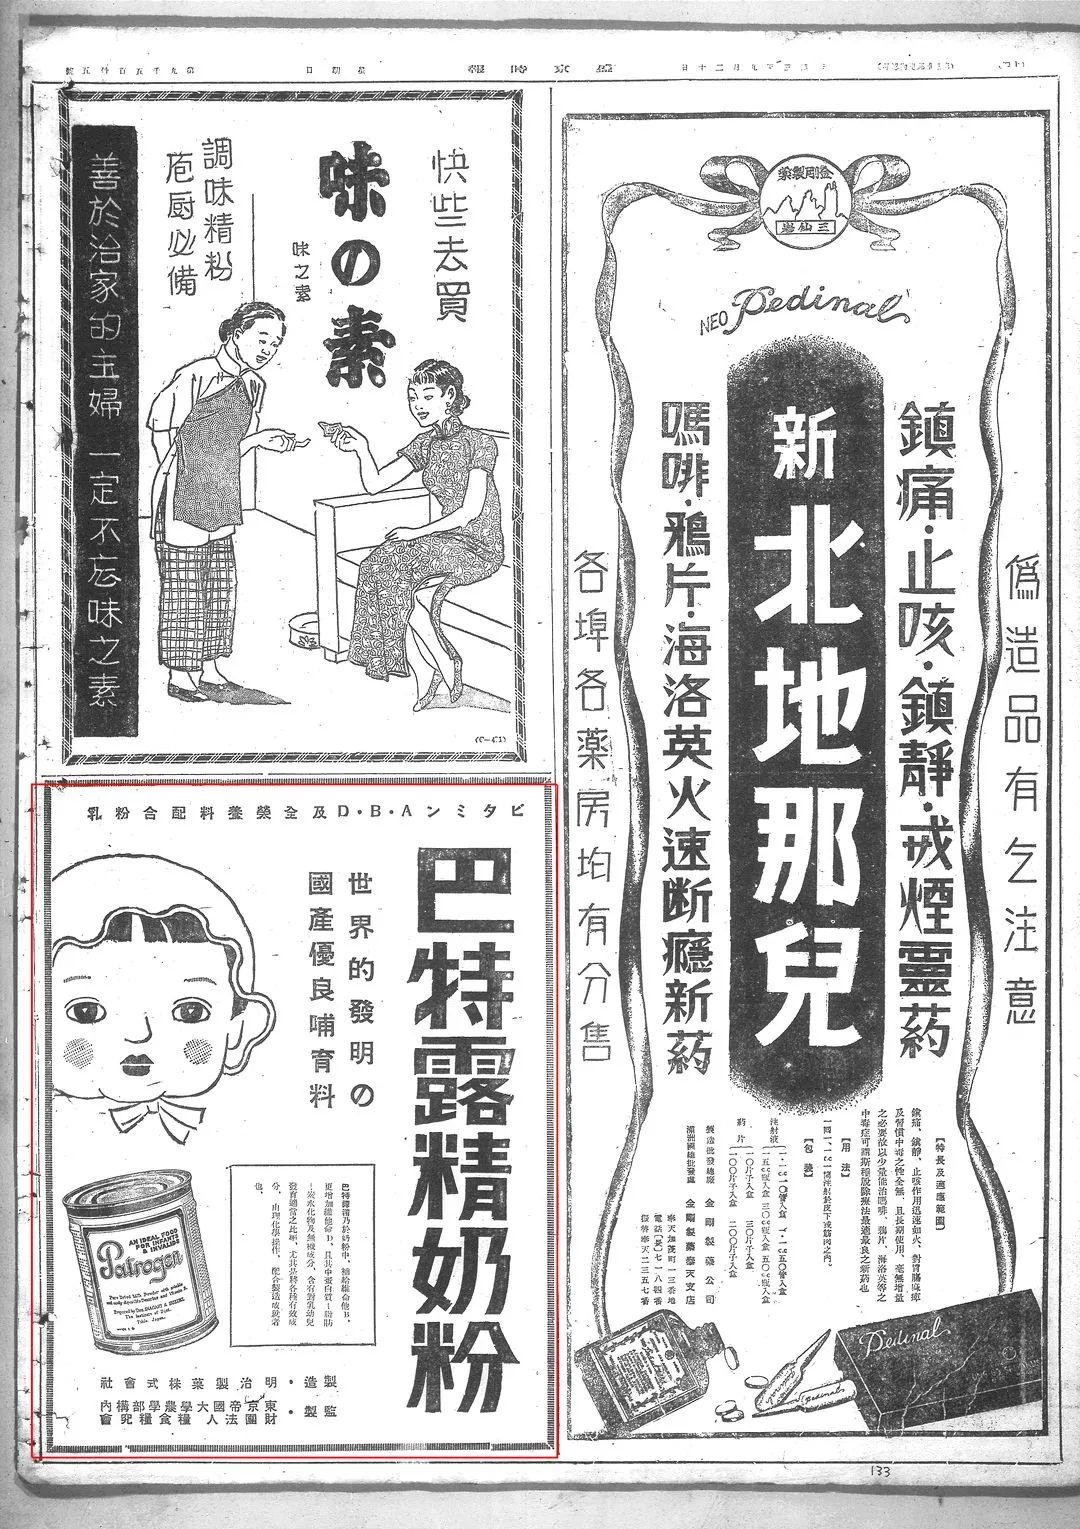 《盛京时报》 |  外国商品广告数据一览